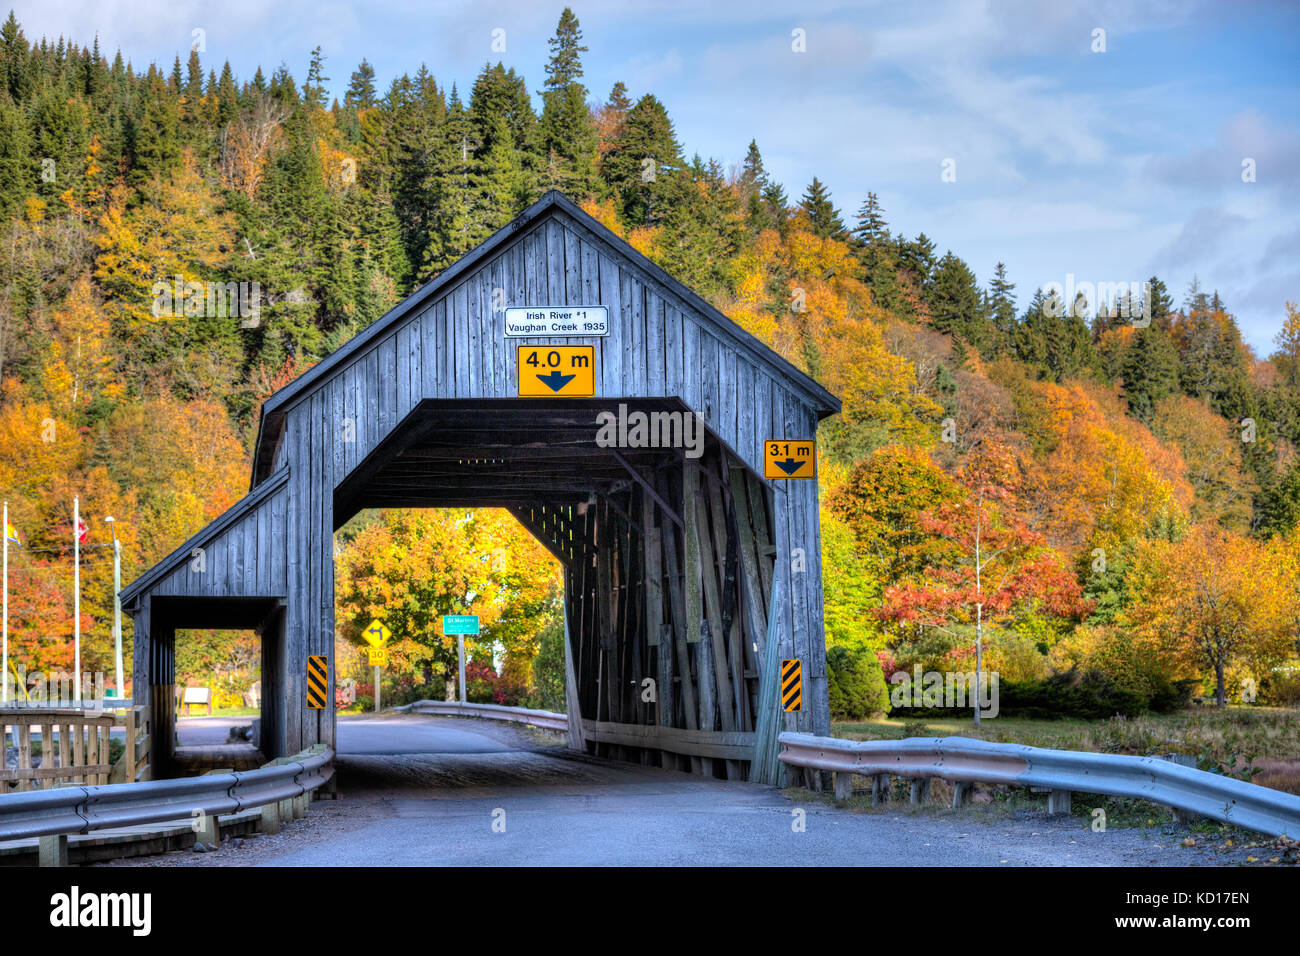 Irische River #1 Covered Bridge, vaughan Creek, St. Martins, Bucht von Fundy, New Brunswick, Kanada Stockfoto